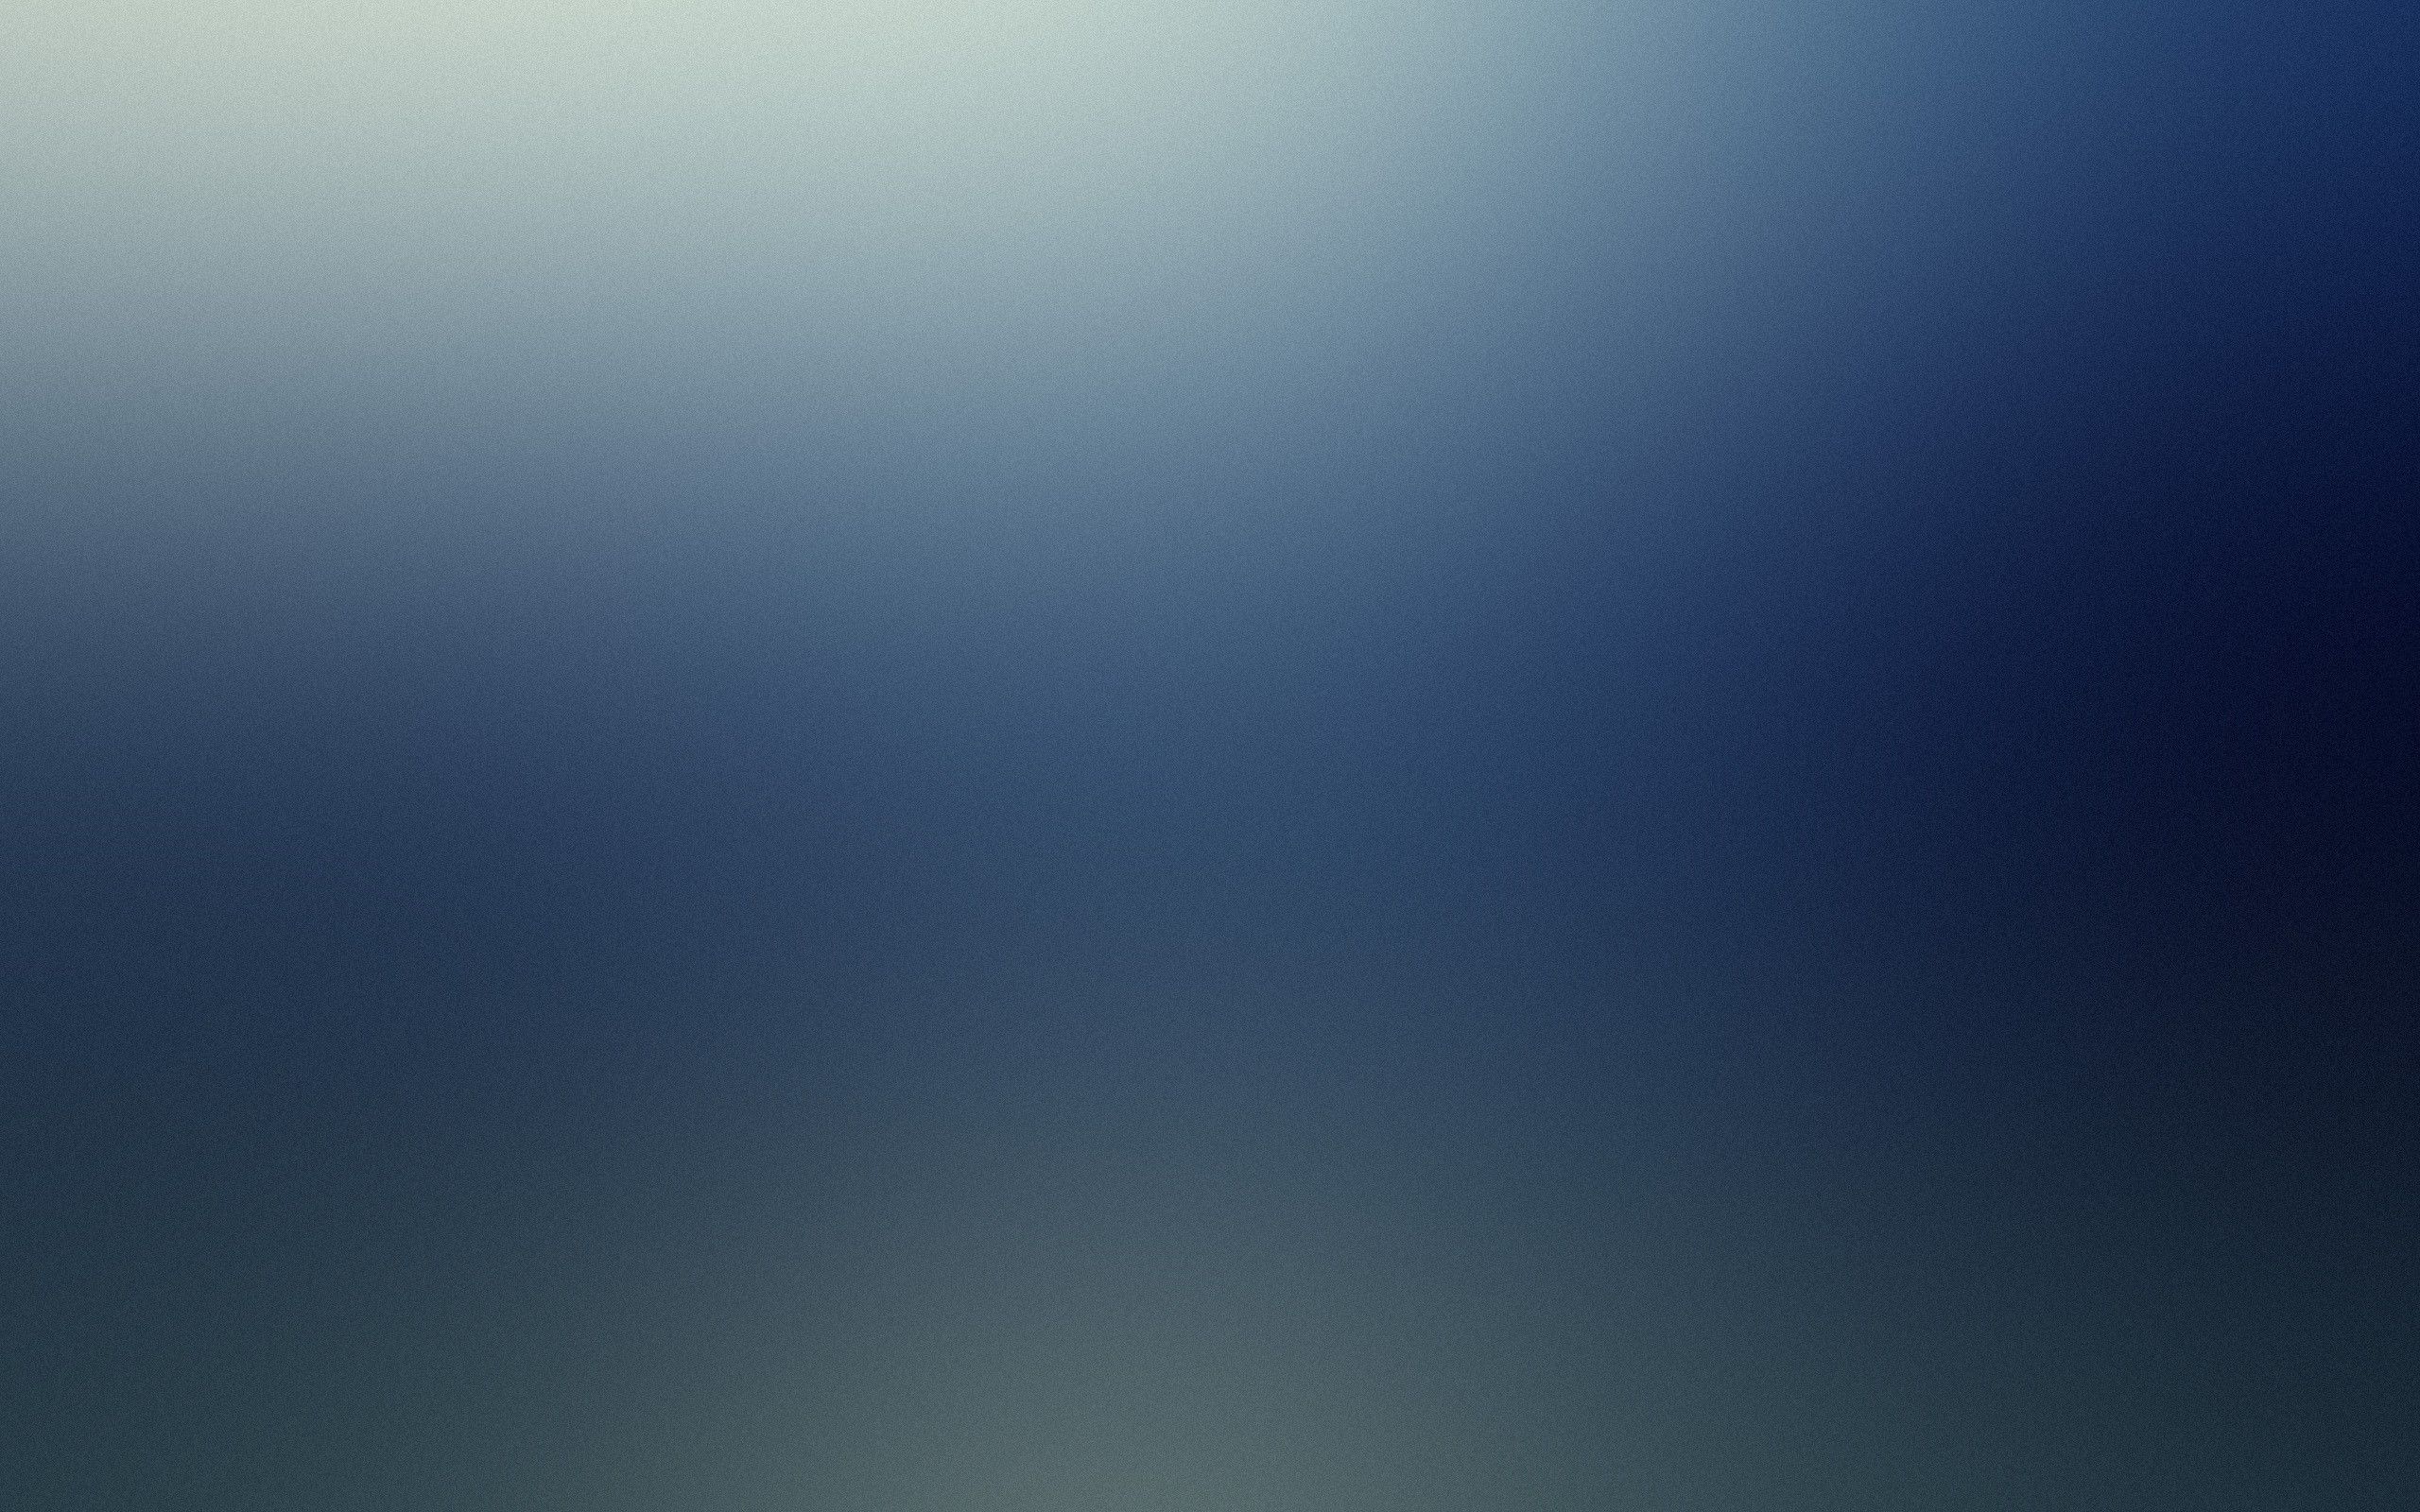 Light minimalistic lame gaussian blur blurred wallpaper